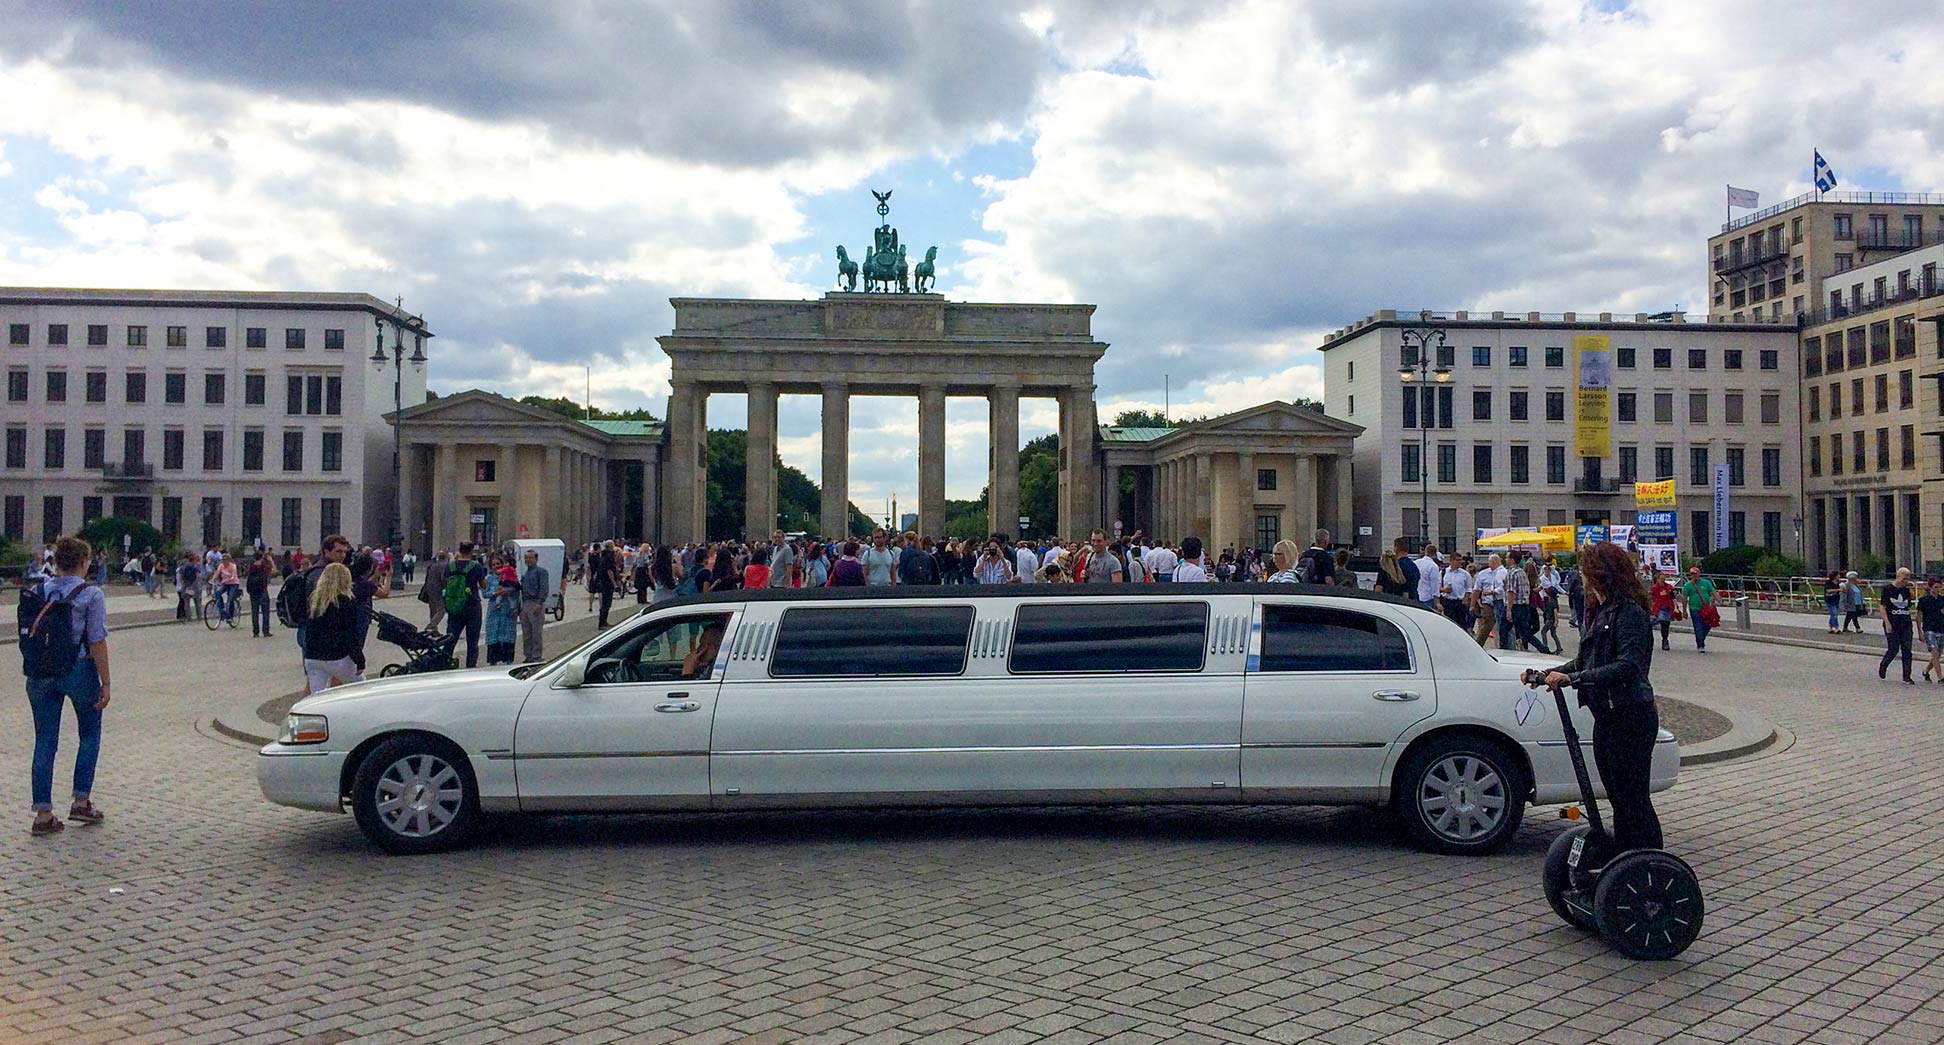 Tourists at Pariser Platz with Brandenburg Gate in Berlin